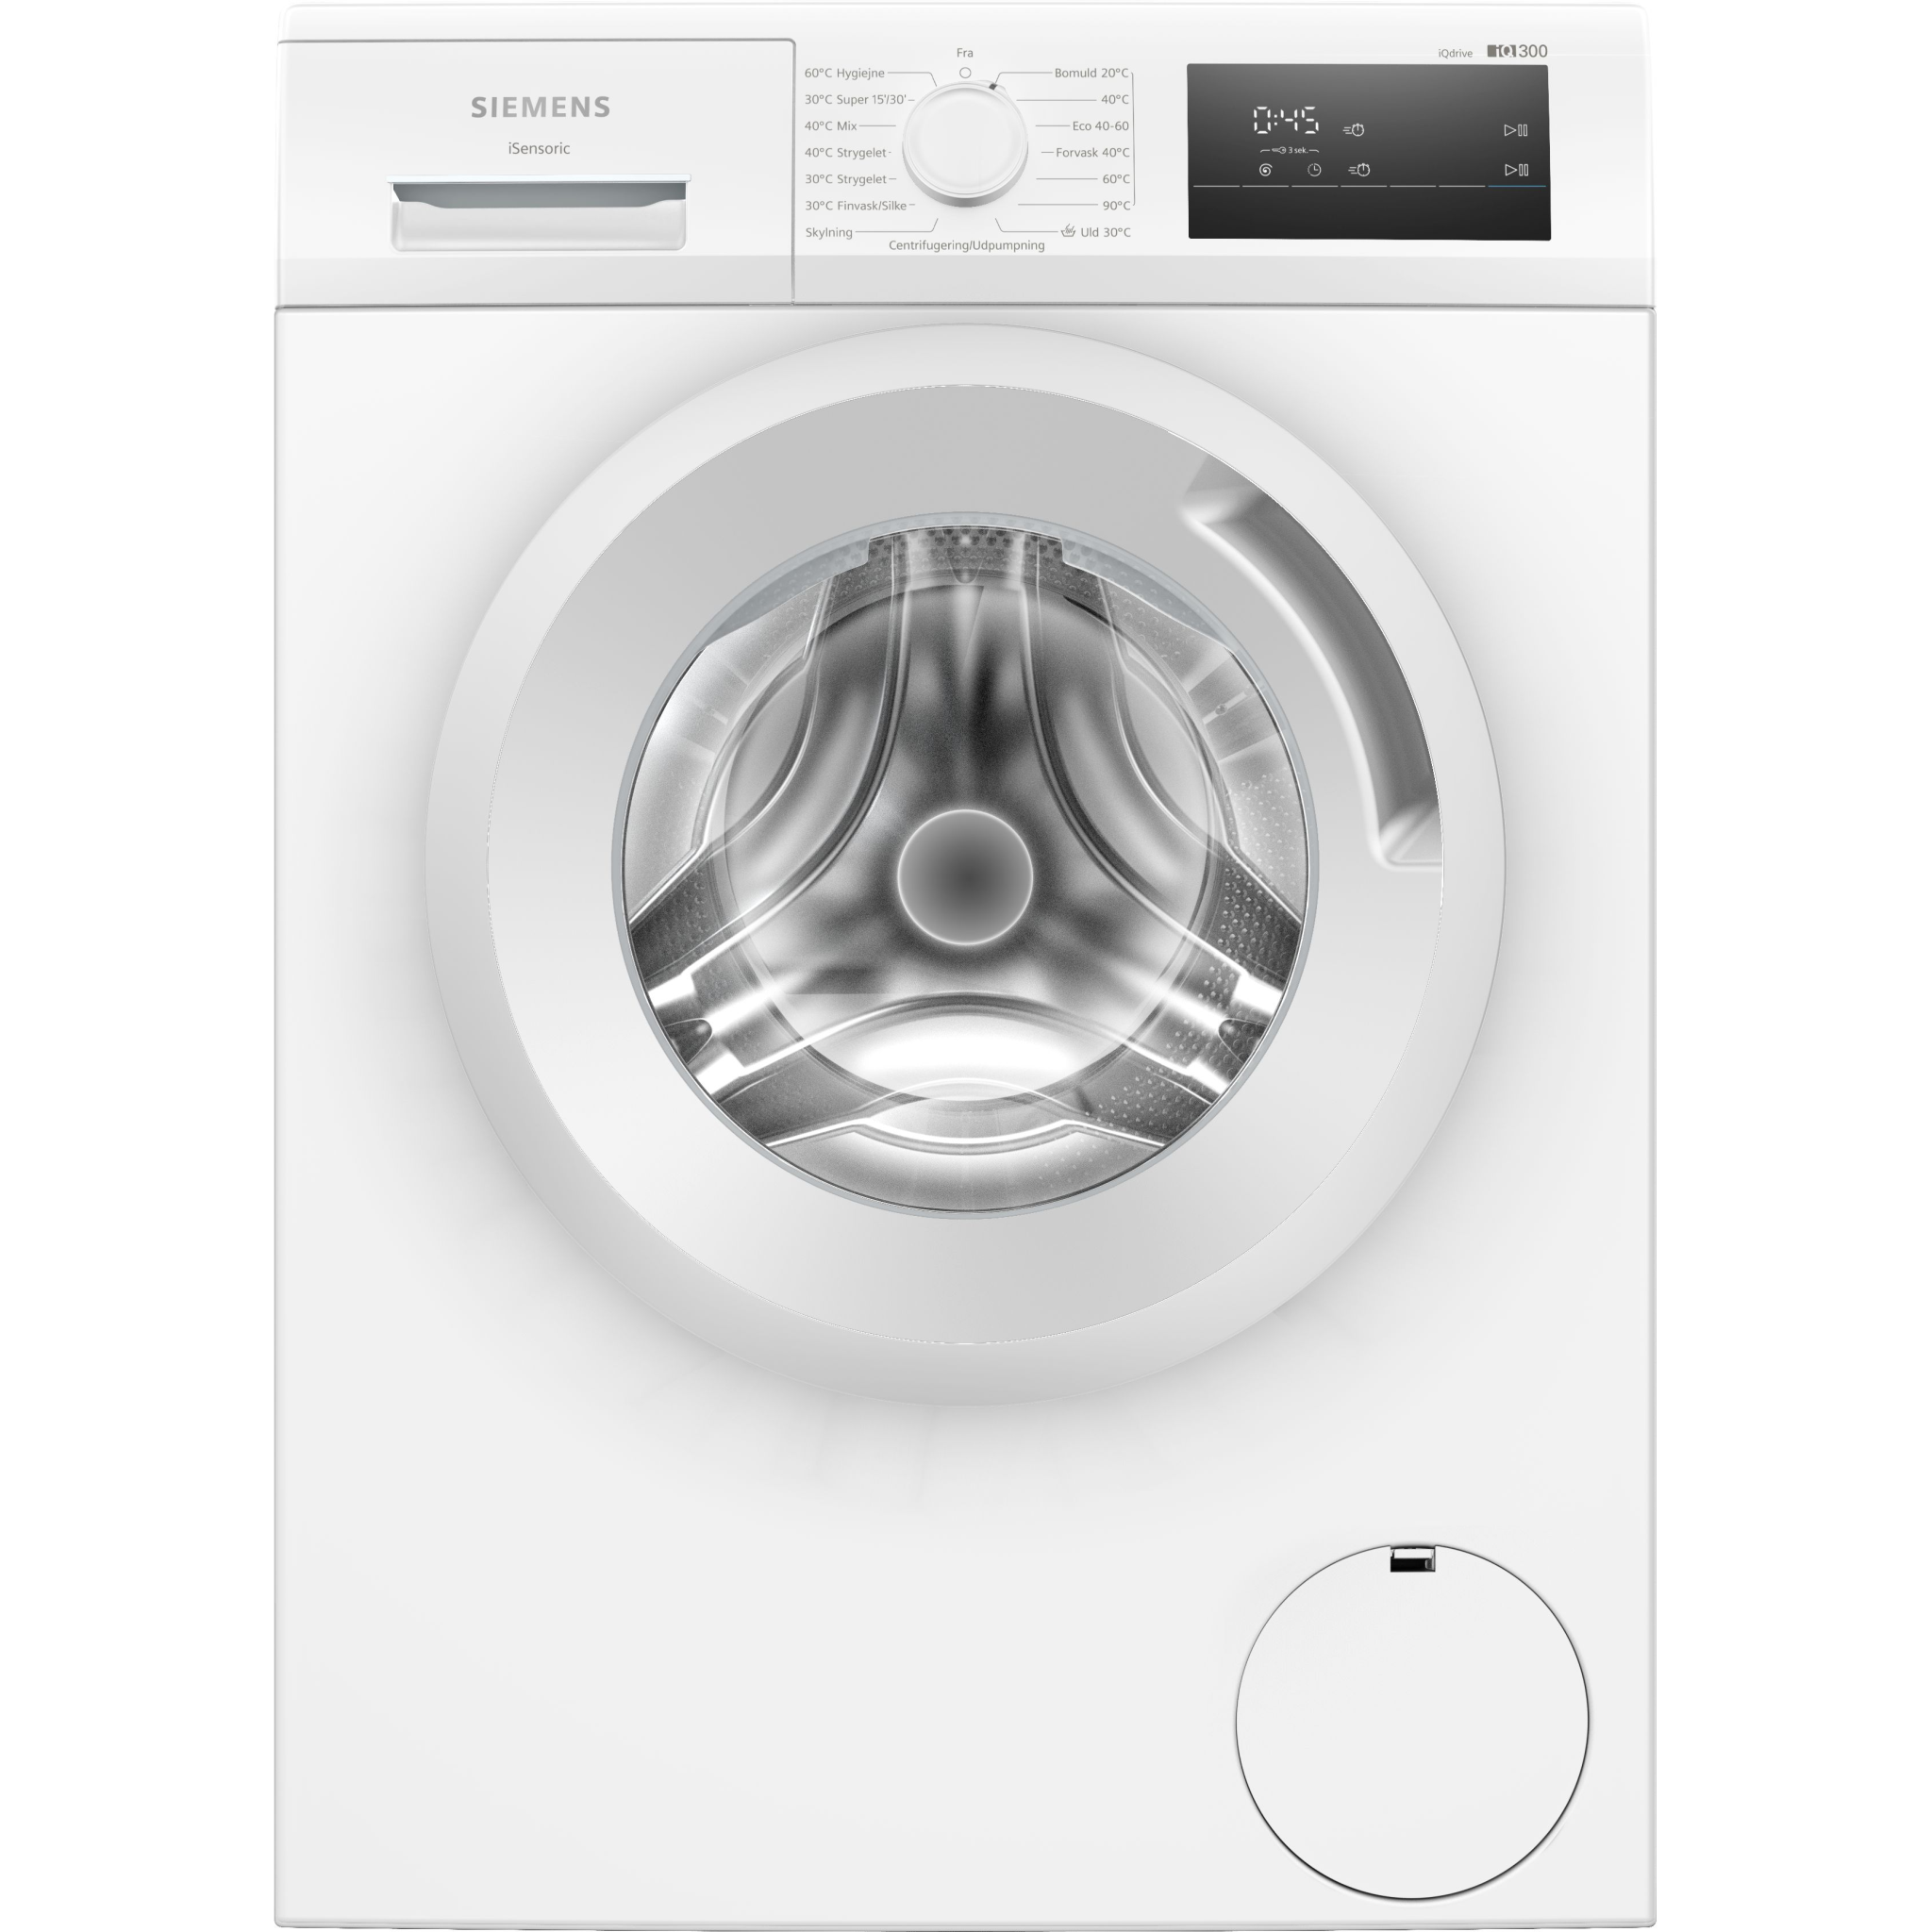 4242003921753 Siemens WM14N0L5DN - Frontbetjent vaskemaskine Hvidevarer,Vaskemaskine,Frontbetjente vaskemaskiner 11400007420 WM14N0L5DN